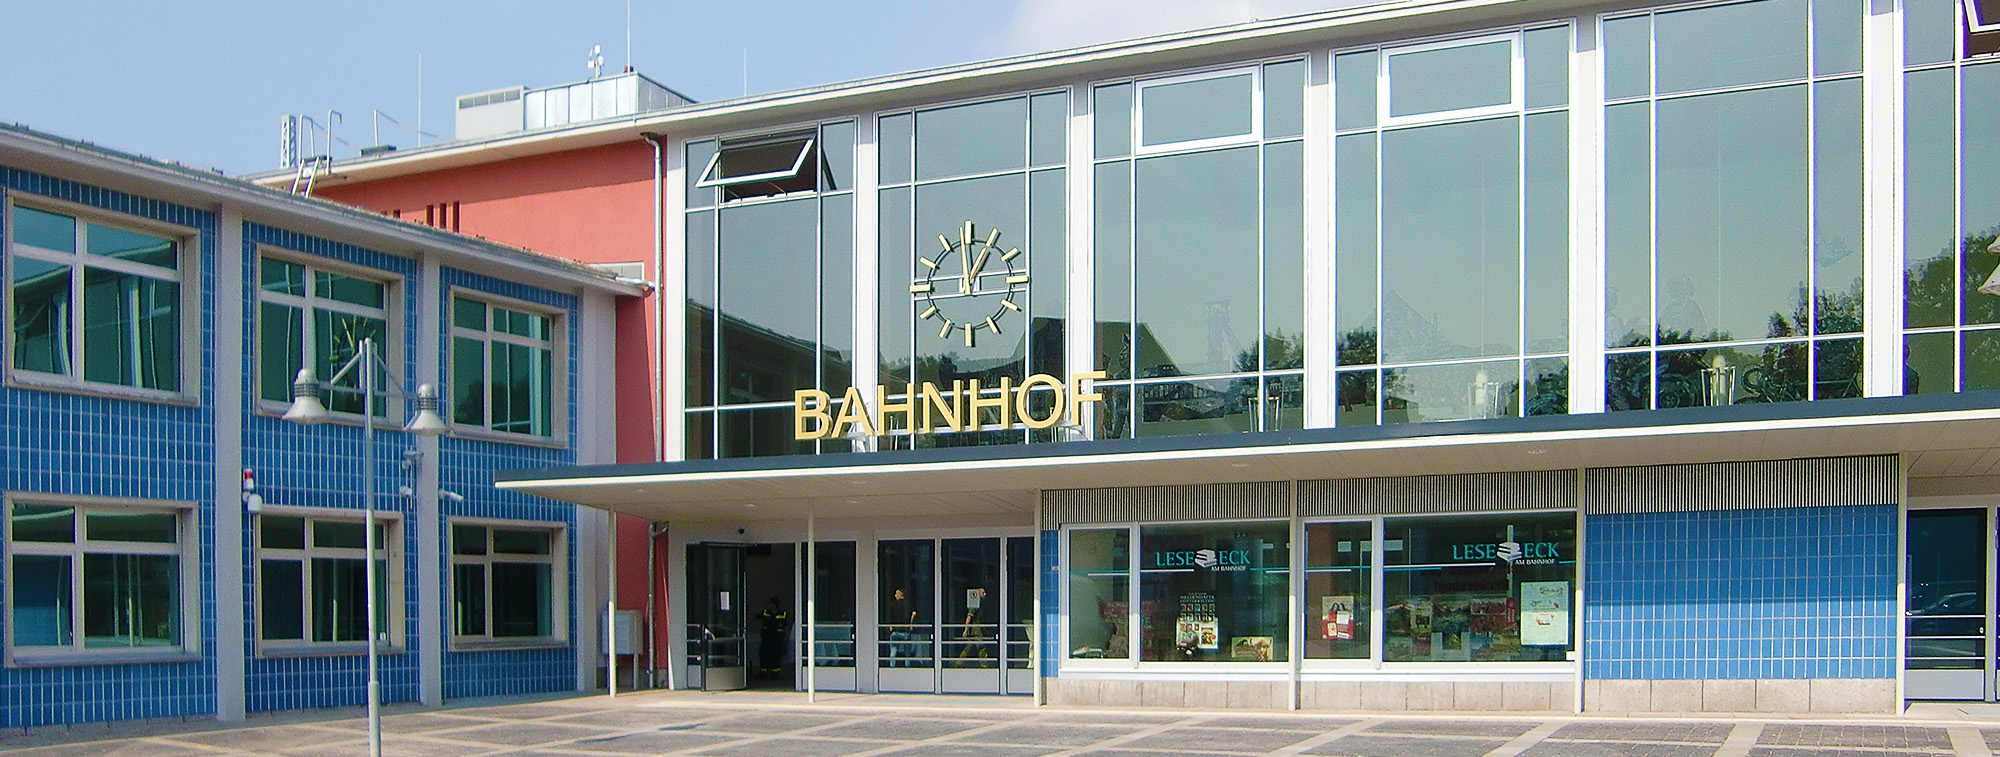 Als herausragendes Beispiel für Bahnhofsarchitektur der 1960er-Jahre erstrahlt das Empfangsgebäude in Sangerhausen seit 2016 wieder im früheren Glanz